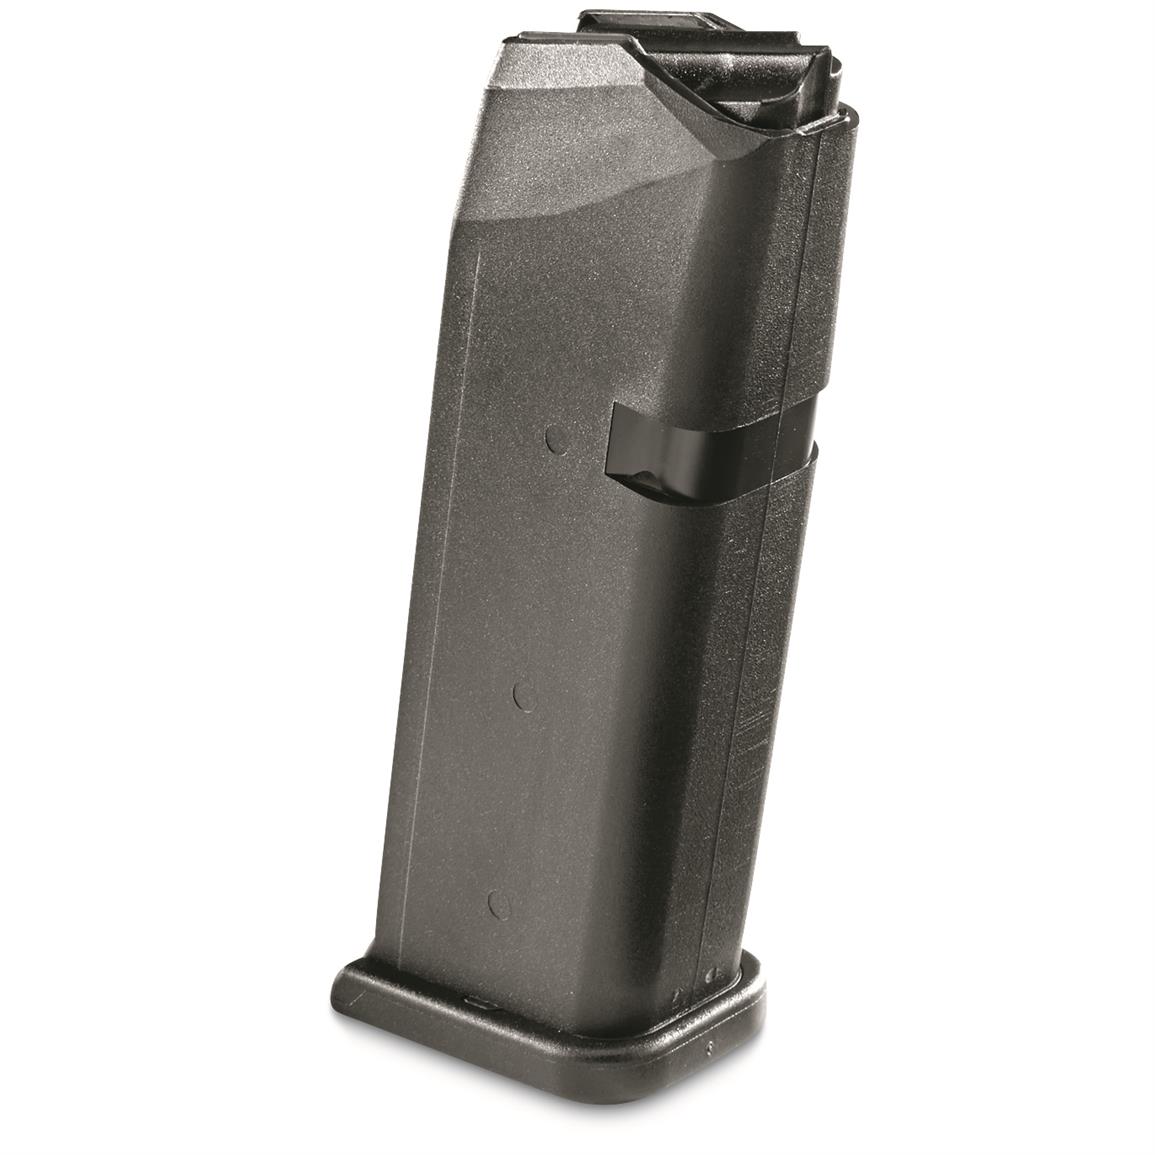 Glock 19 OEM Magazine, 9mm, 15 Rounds